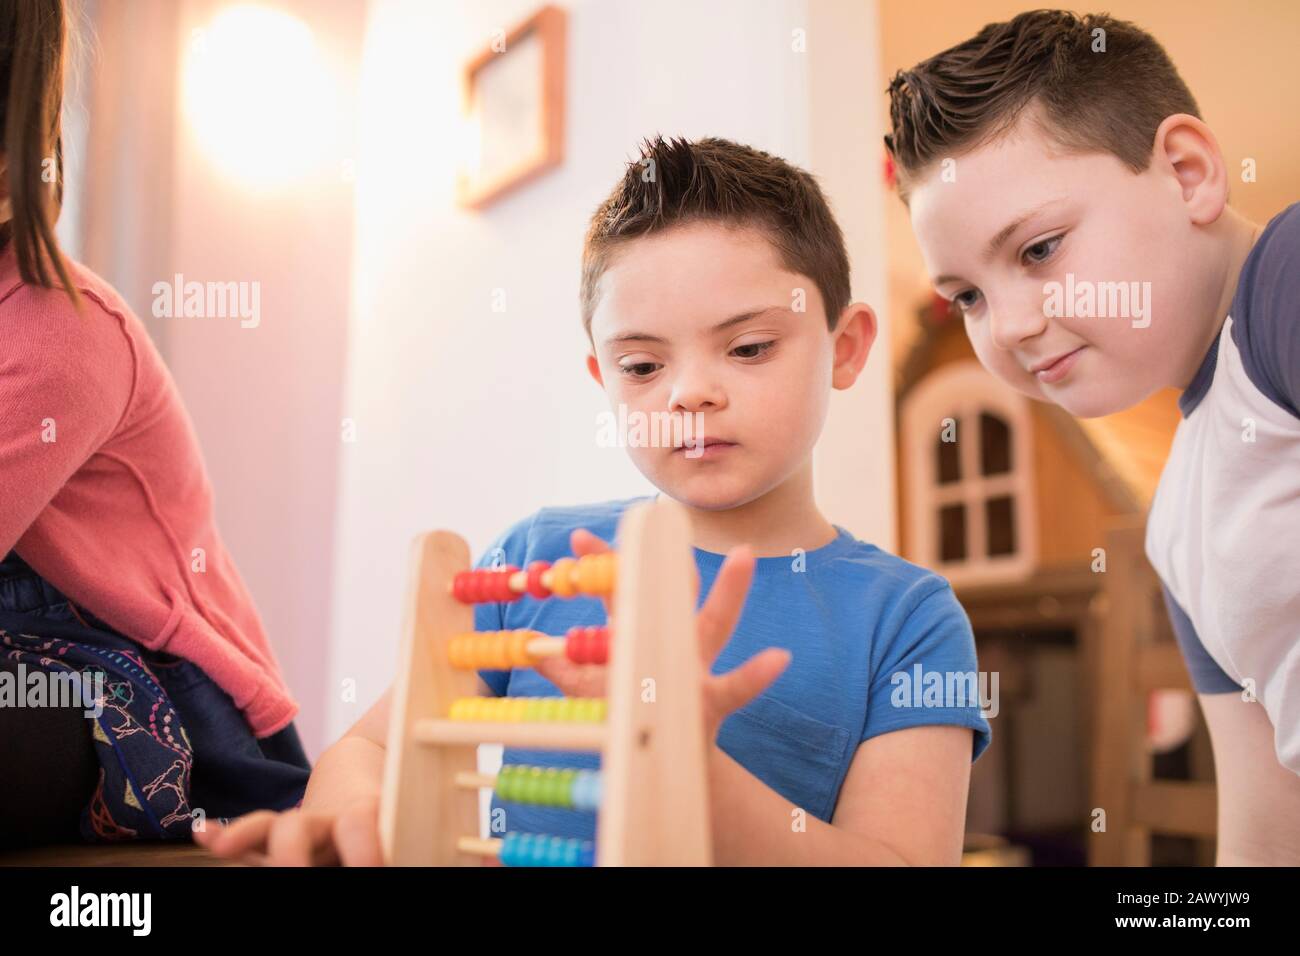 Junge mit Down-Syndrom und Bruder, der mit Spielzeug spielt Stockfoto